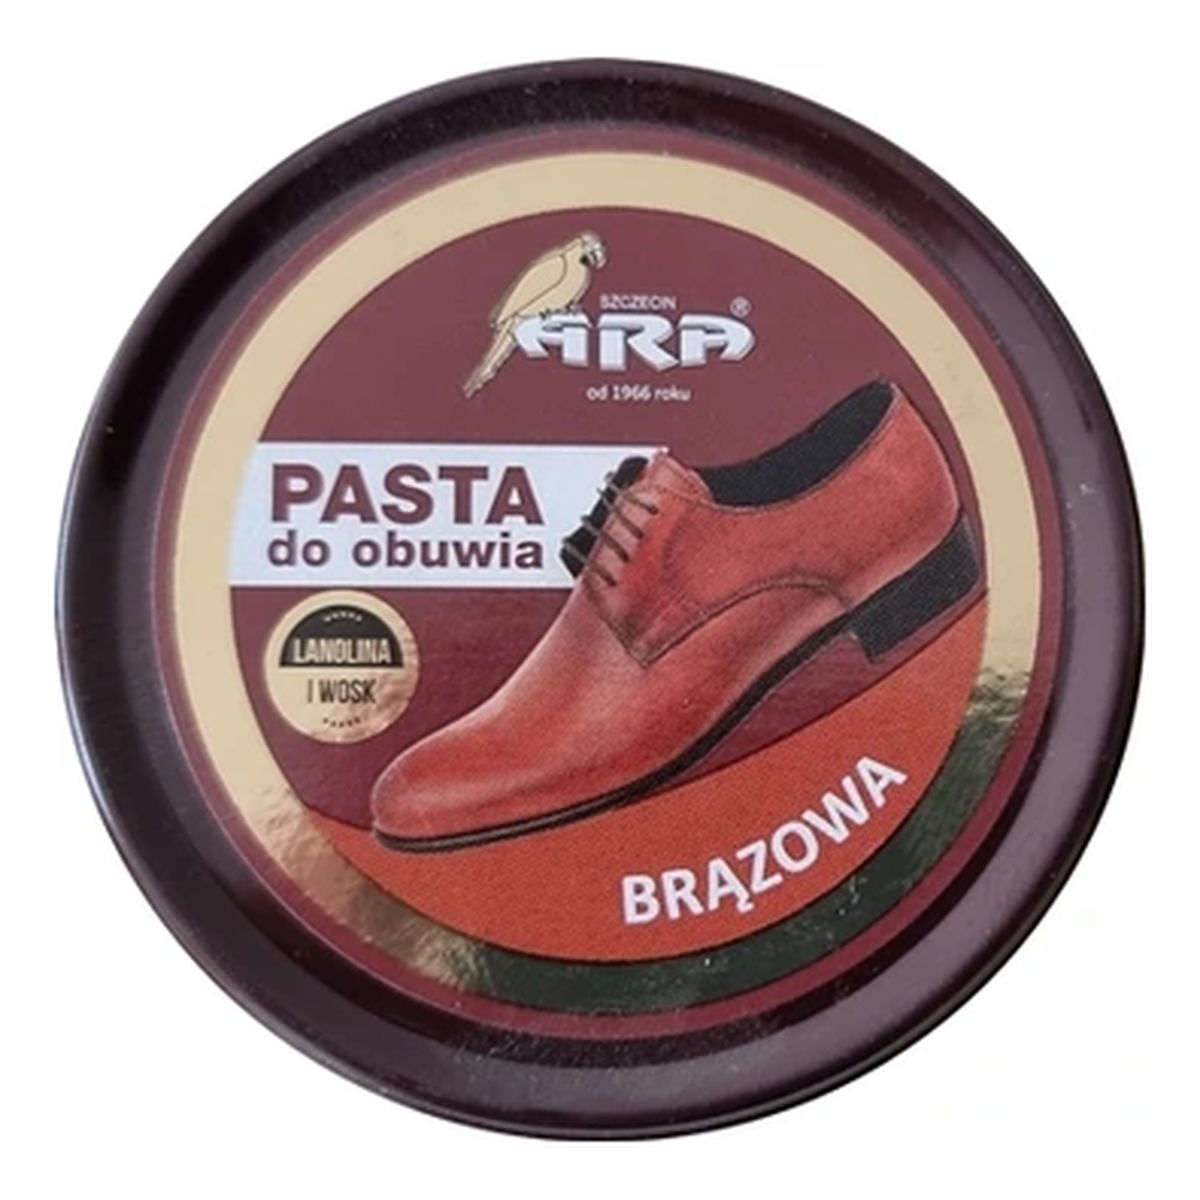 Ara Pasta do obuwia z lanoliną brązowa 40ml